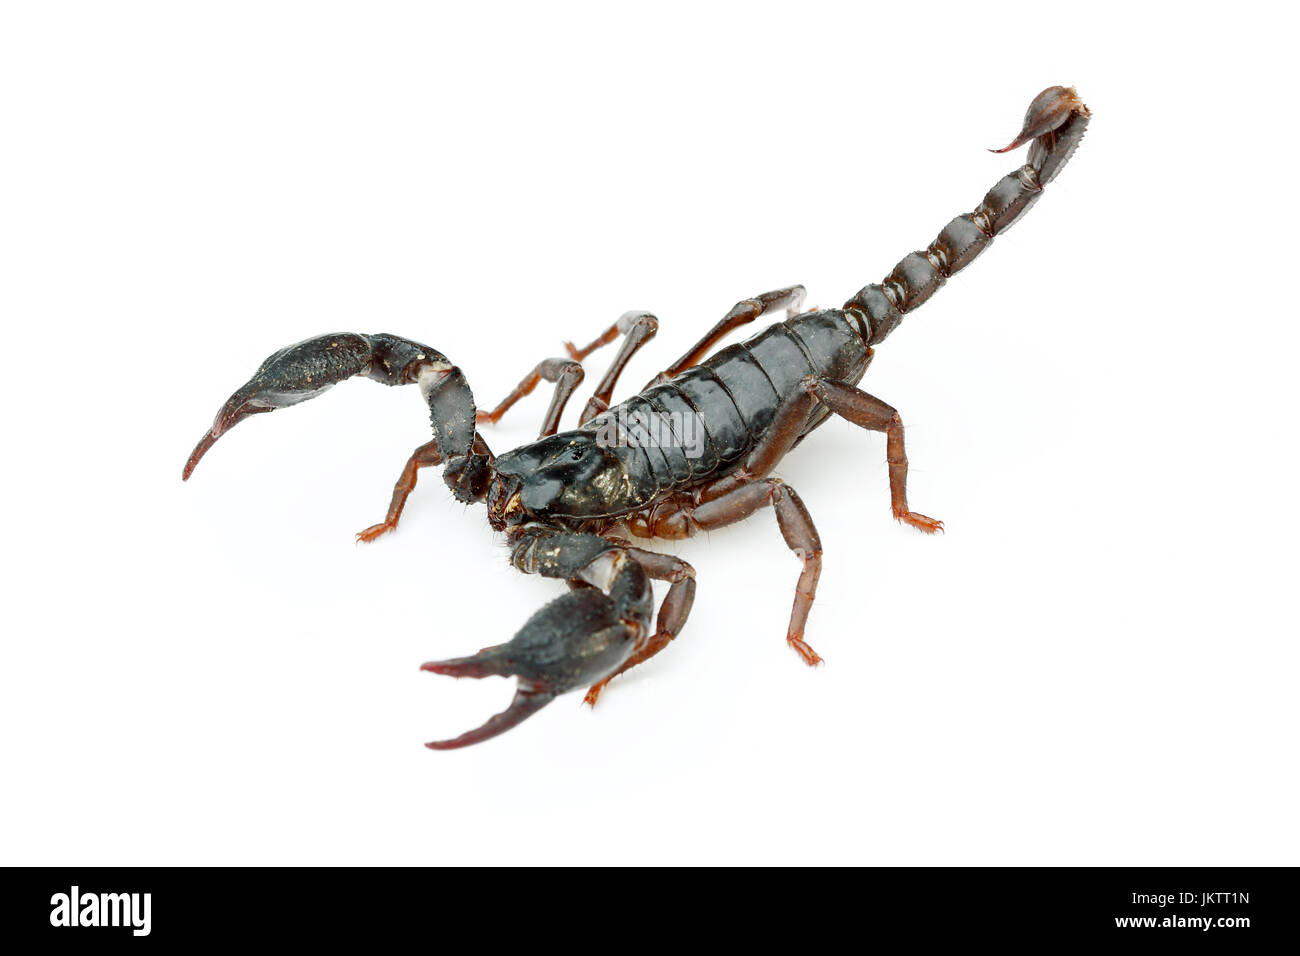 Scorpion géant asiatique (Heterometrus laoticus forêt) sur fond blanc. H. laoticus est membre de giant forest scorpions (Heterometrus sp.) Banque D'Images